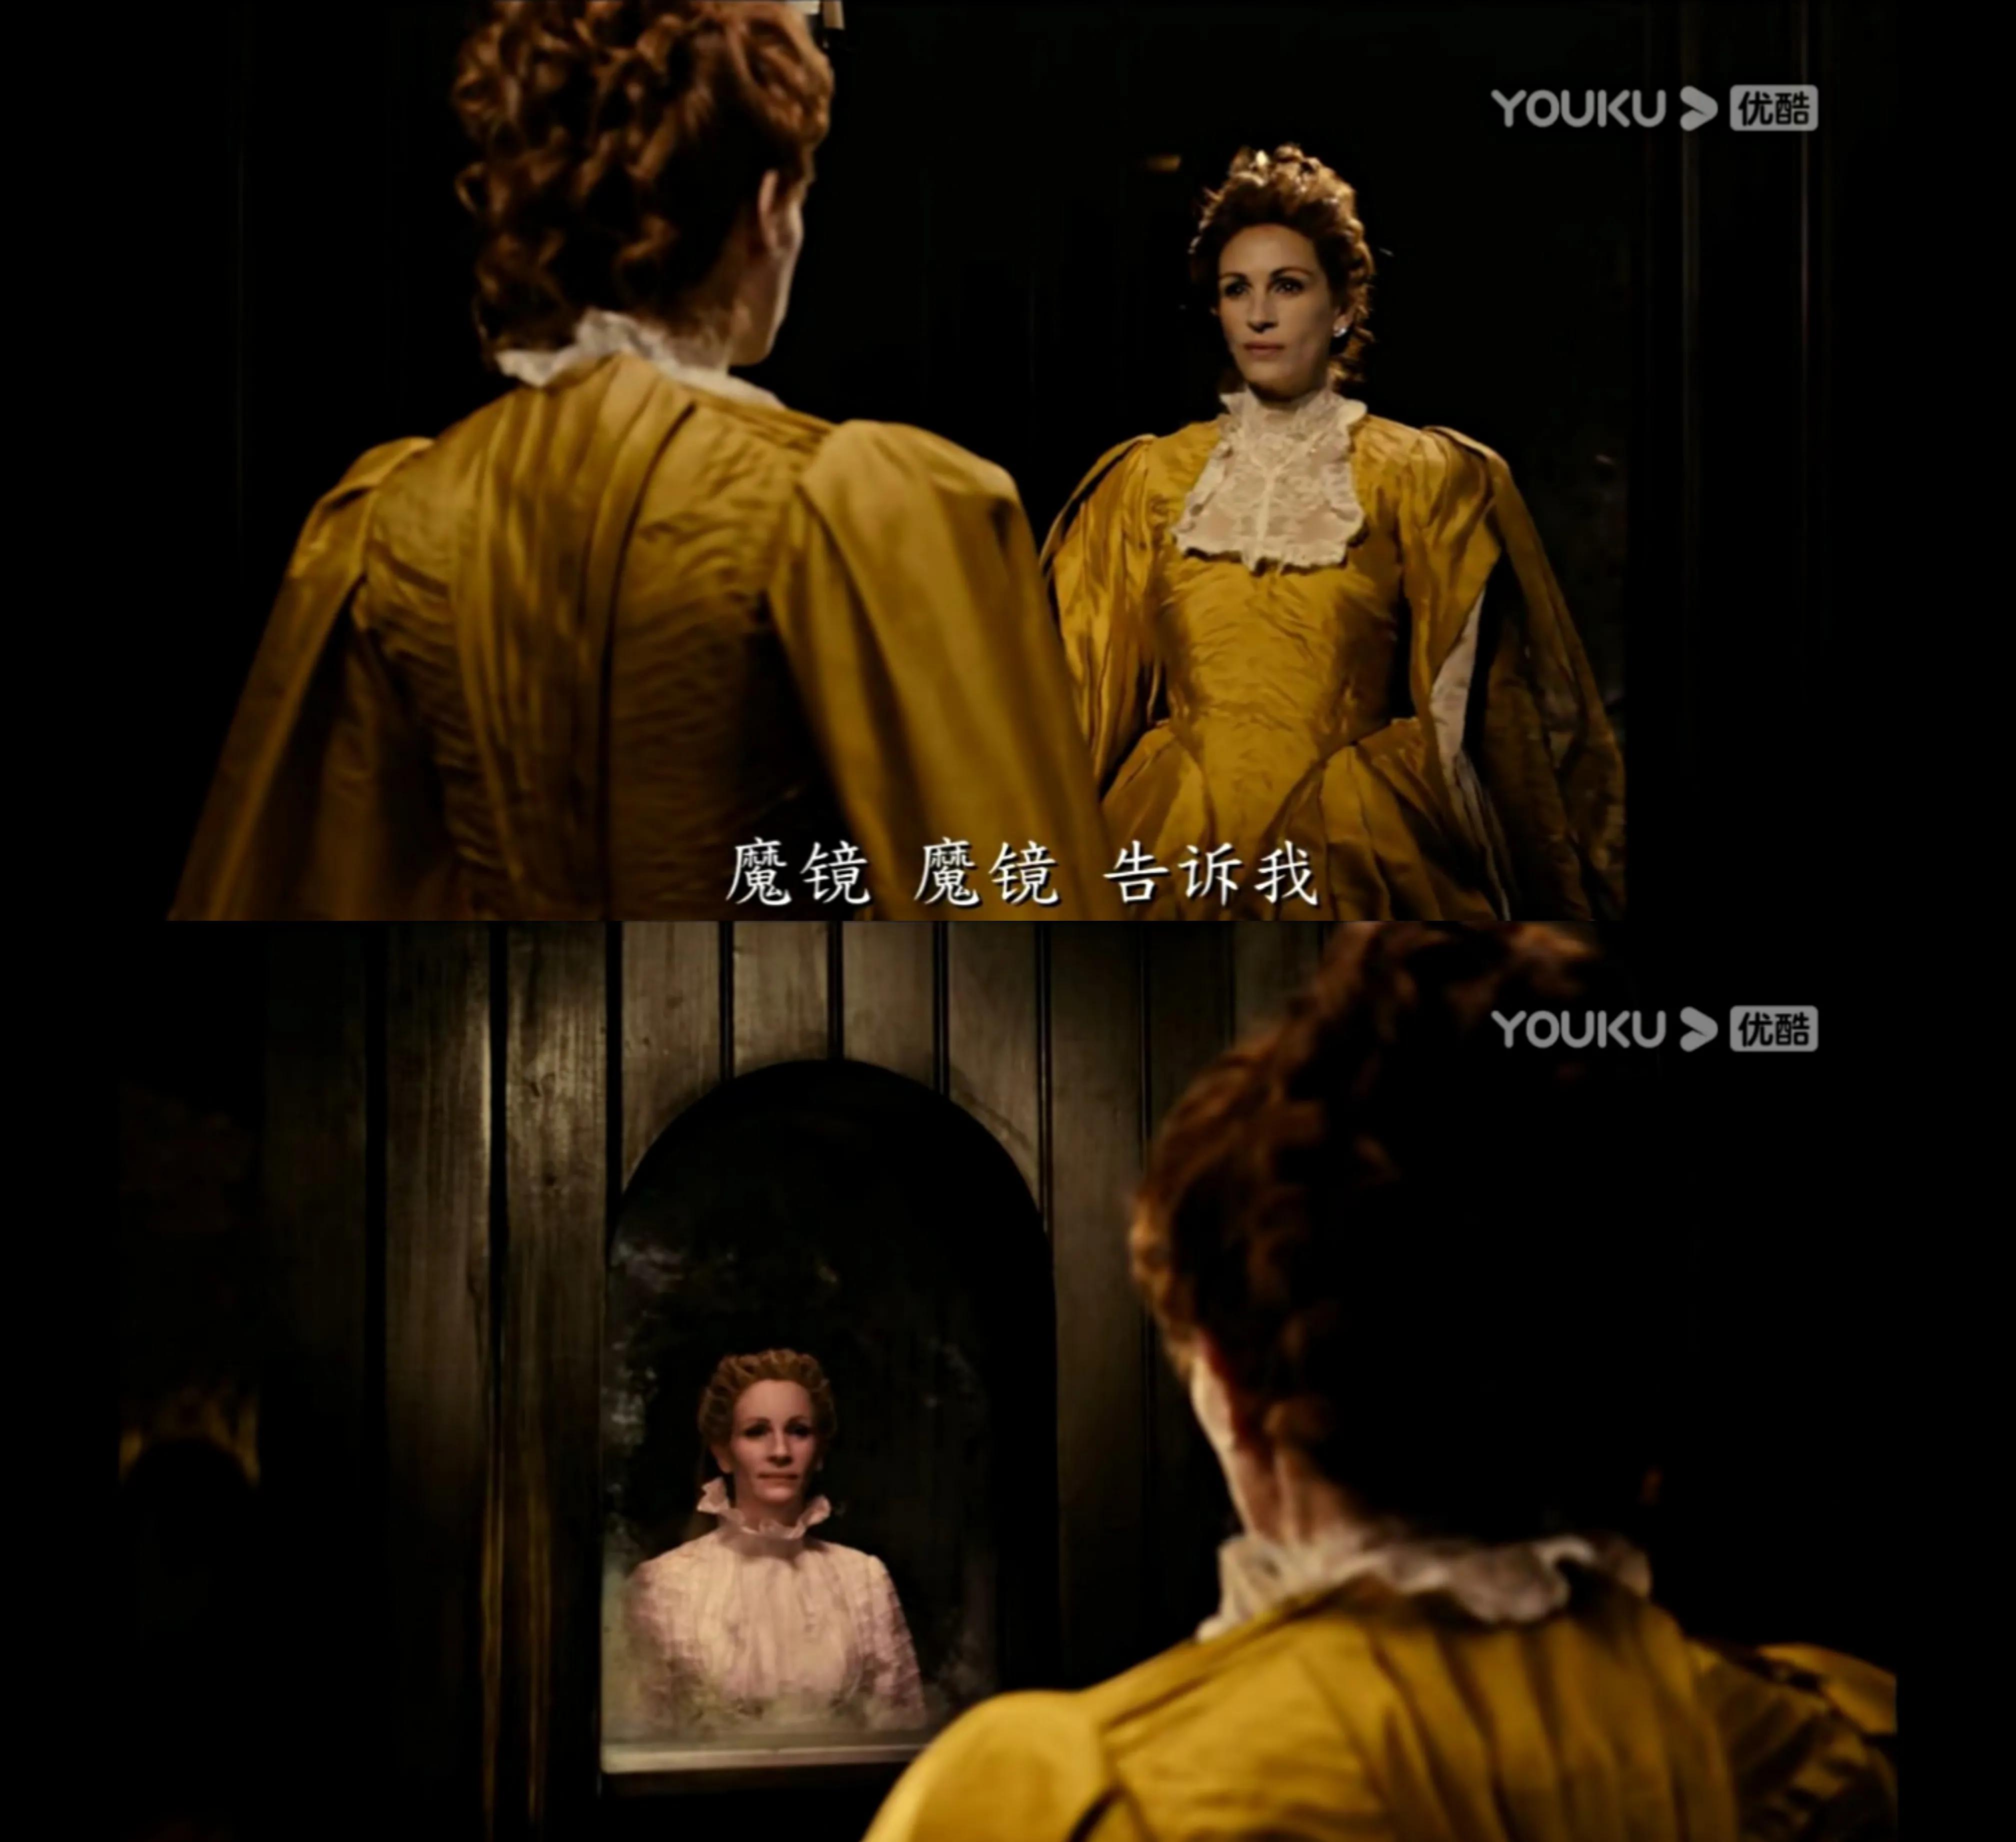 《白雪公主之魔镜魔镜》: 公主拯救王子的故事